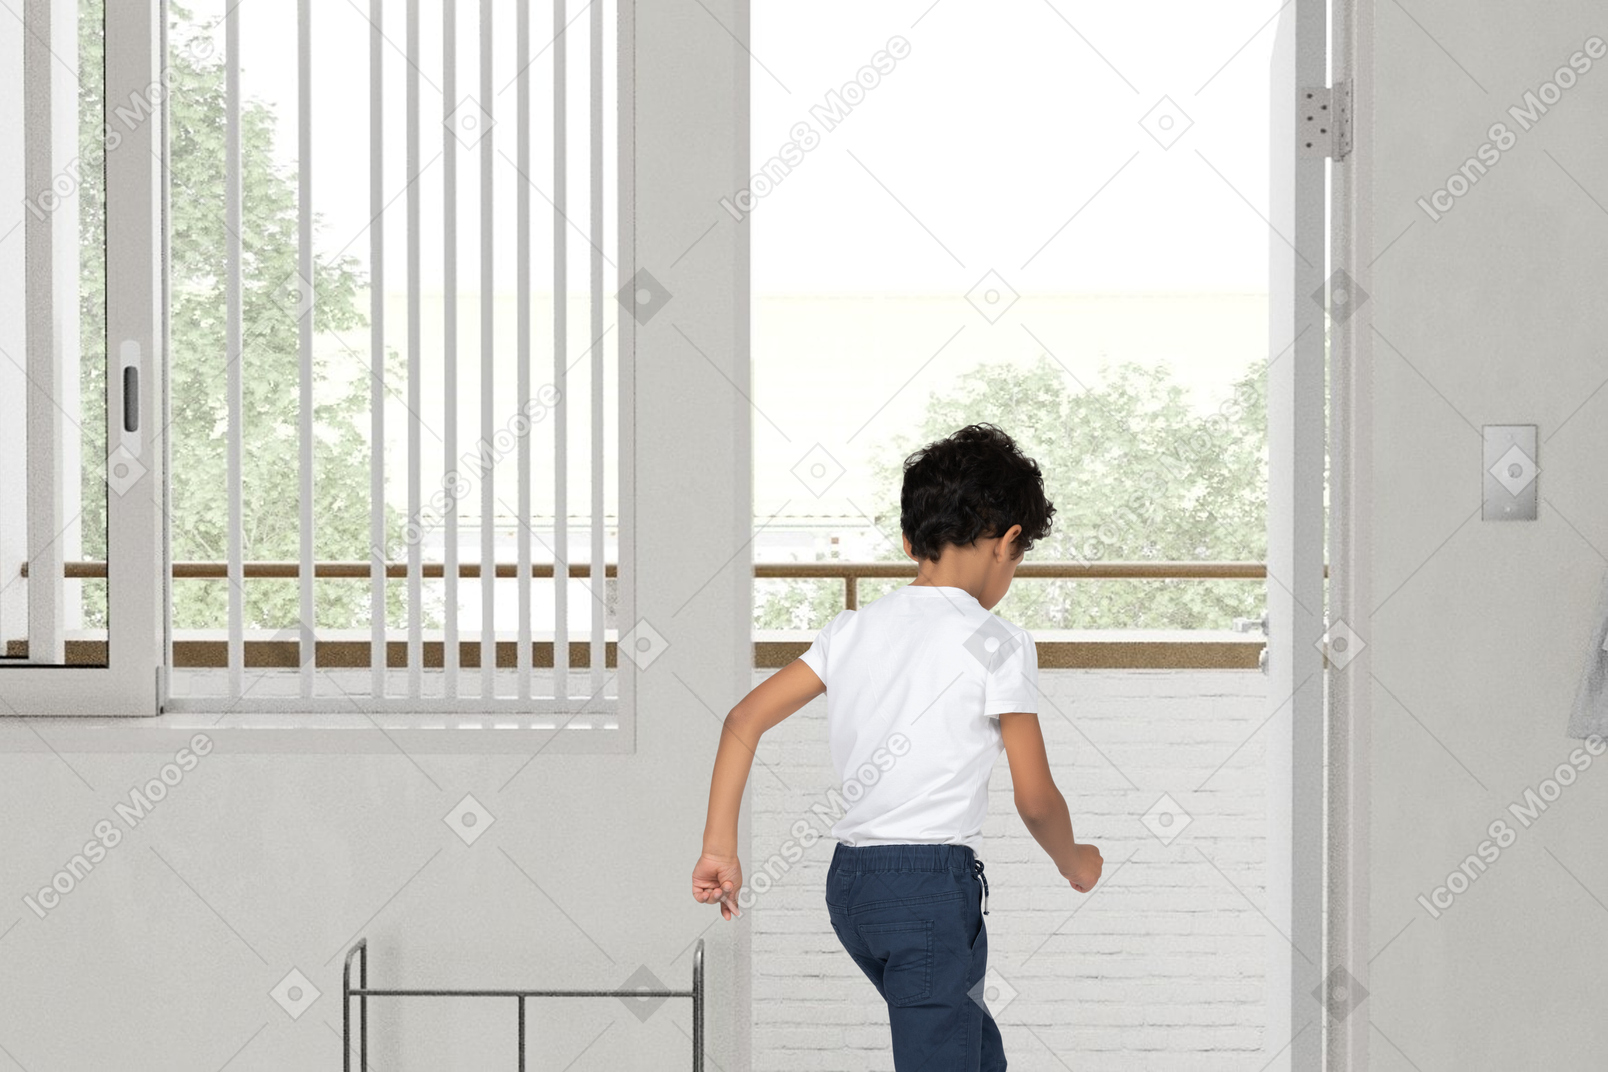 Ein junge rennt zum balkon